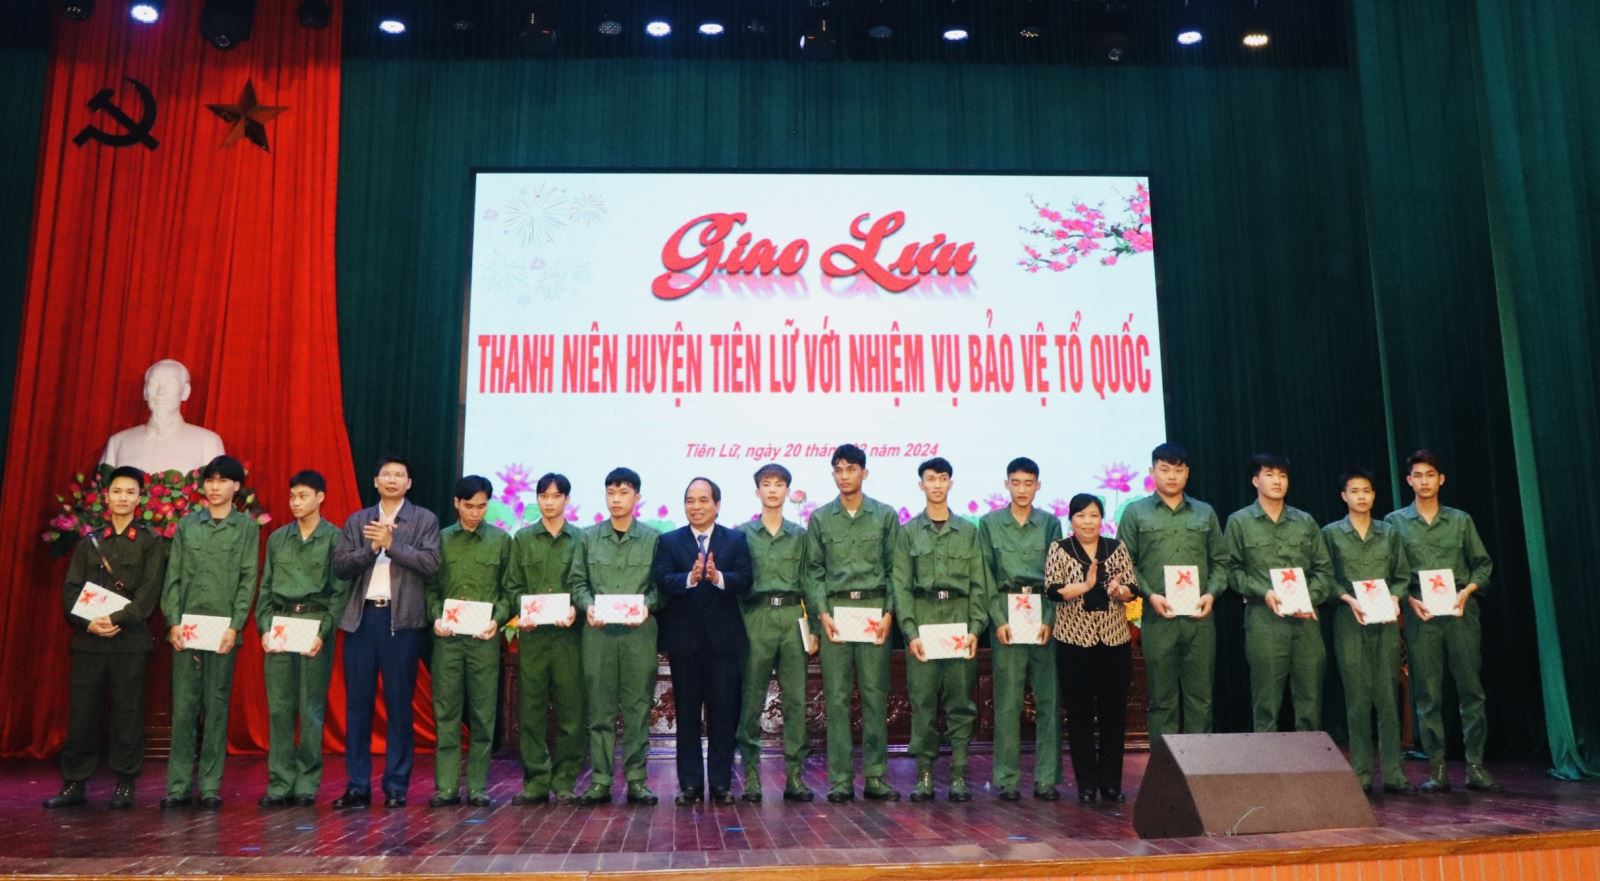 Giao lưu thanh niên huyện Tiên Lữ với nhiệm vụ bảo vệ tổ quốc